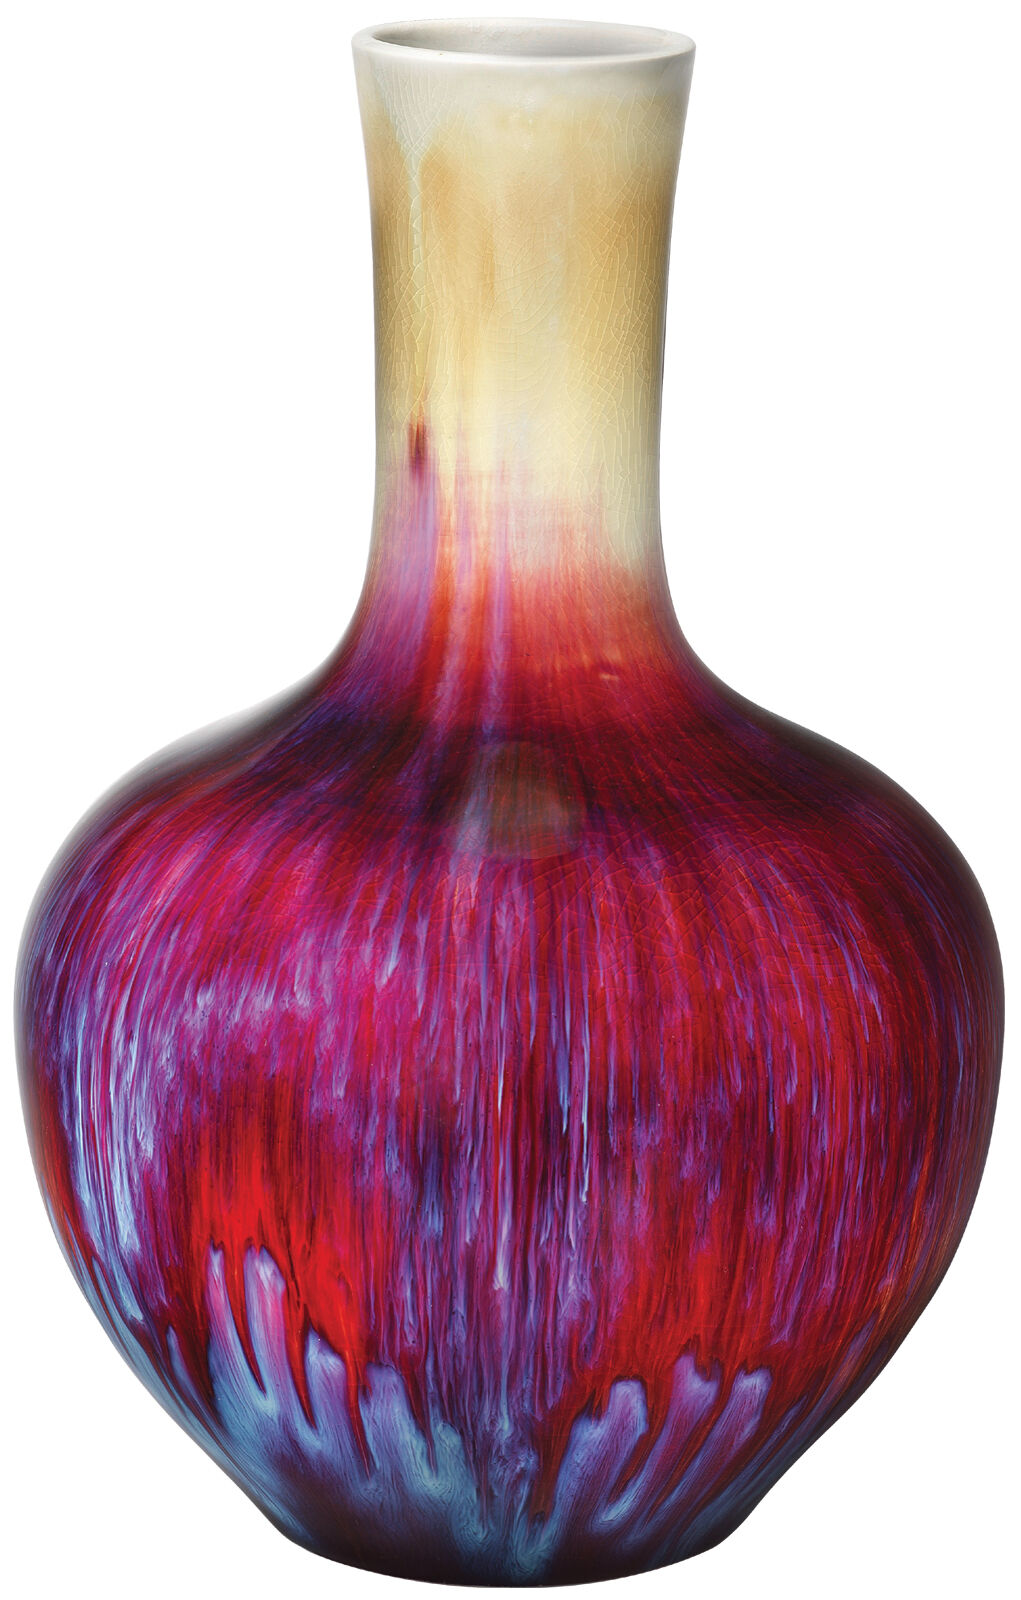 Porcelain vase "Crazy Vase" by Pols Potten